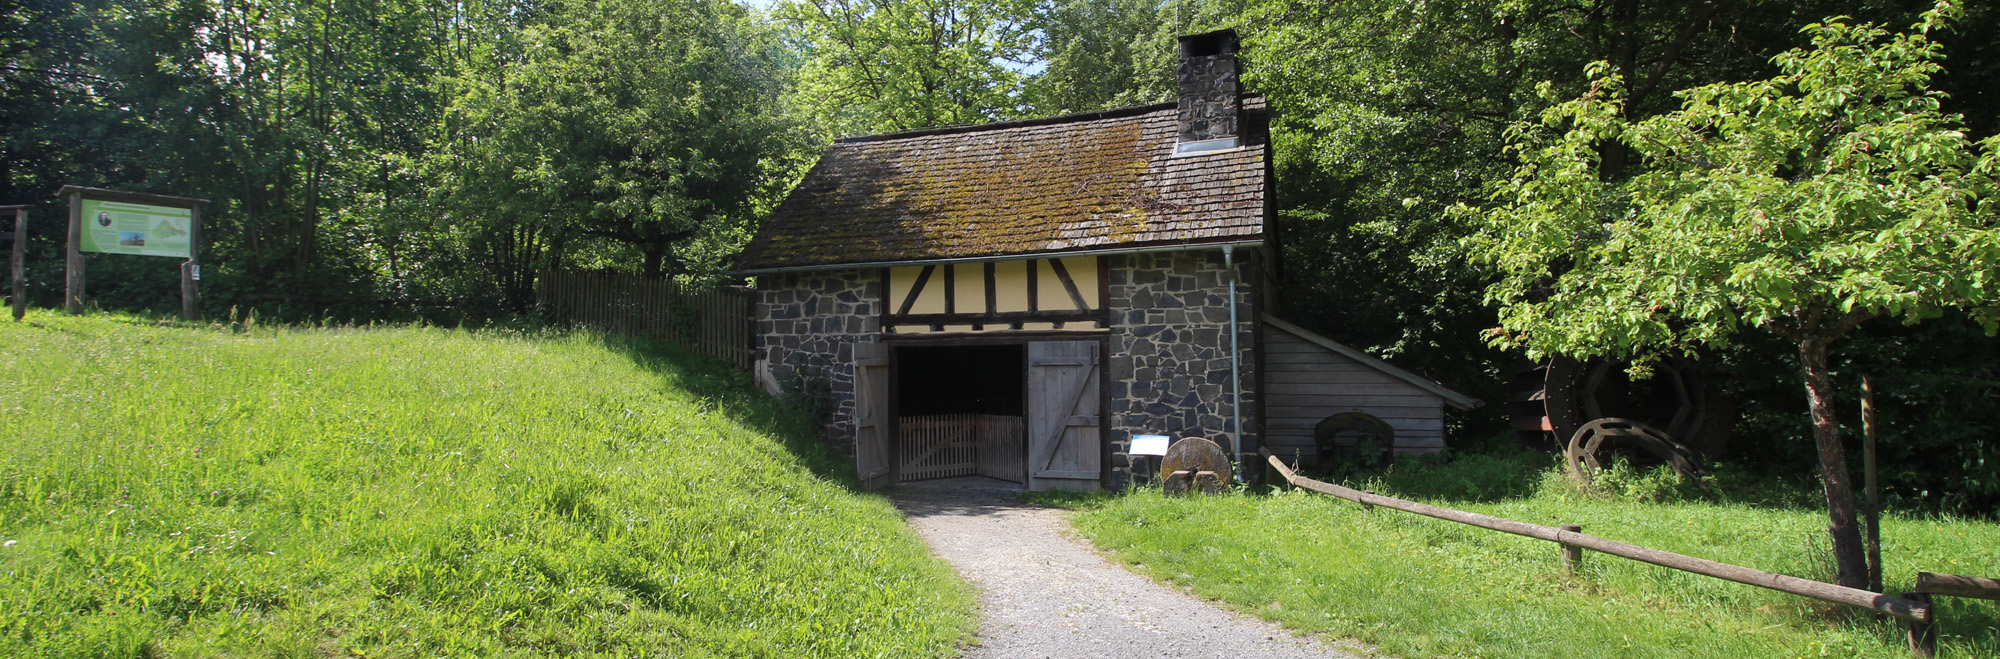 Gemauerte Hütte mit Holztor am Fuß eines kleinen Hügels